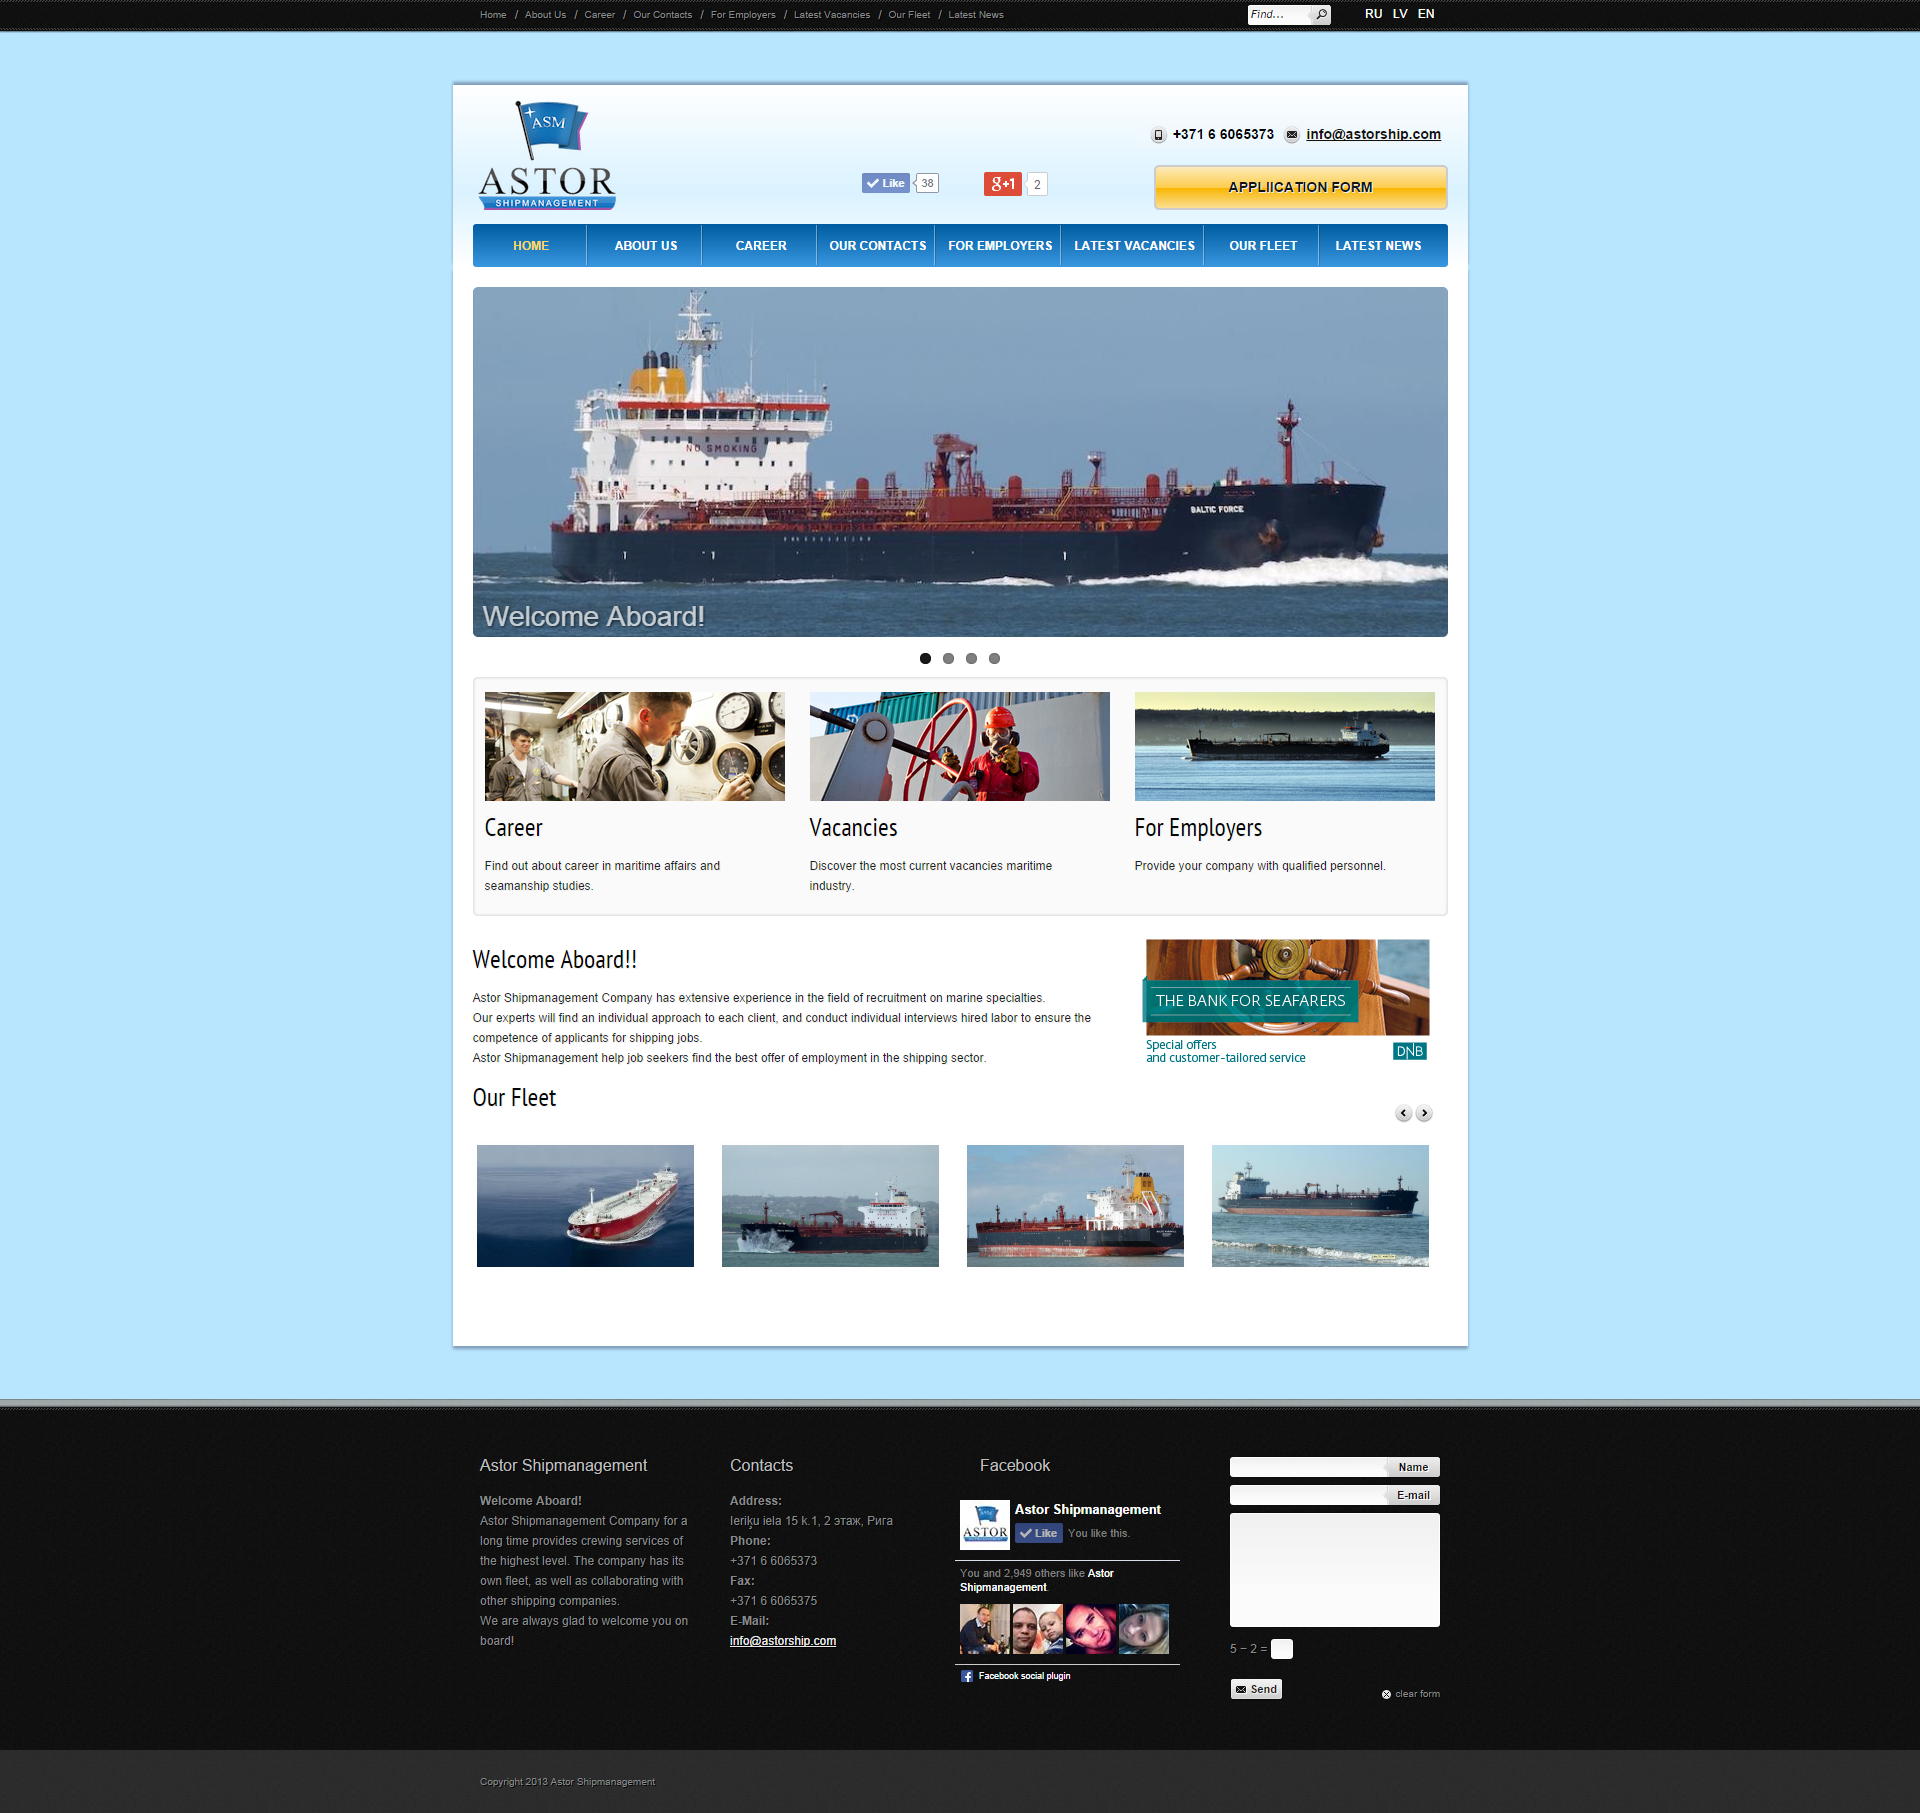 Российские сайты морские